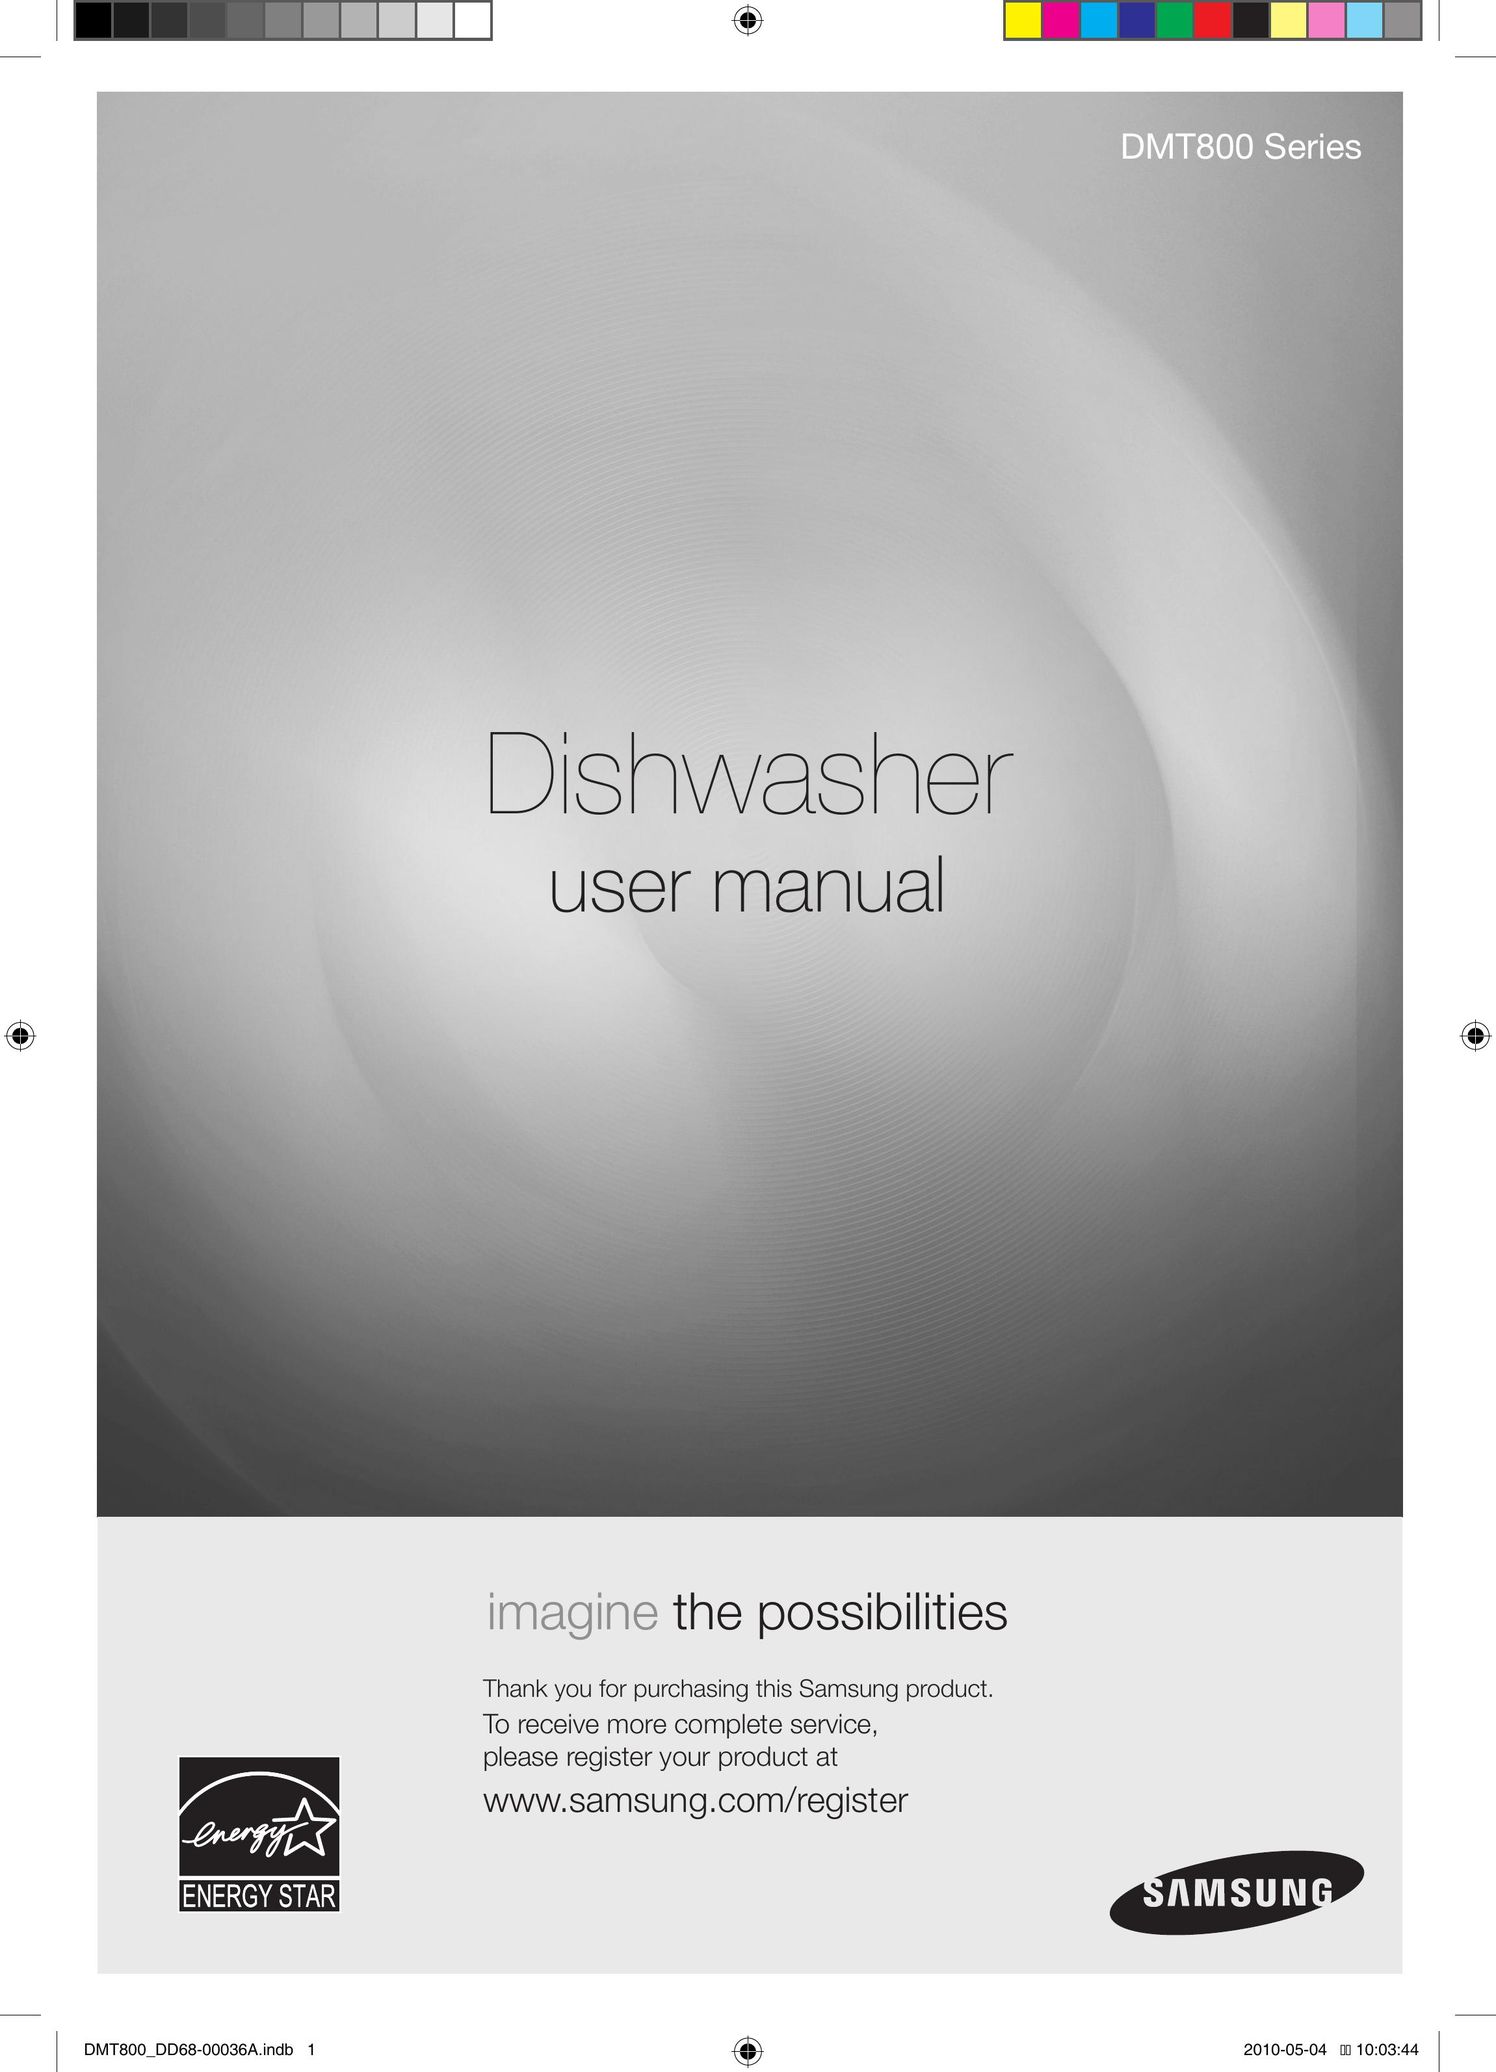 Samsung DMT800RHS Dishwasher User Manual